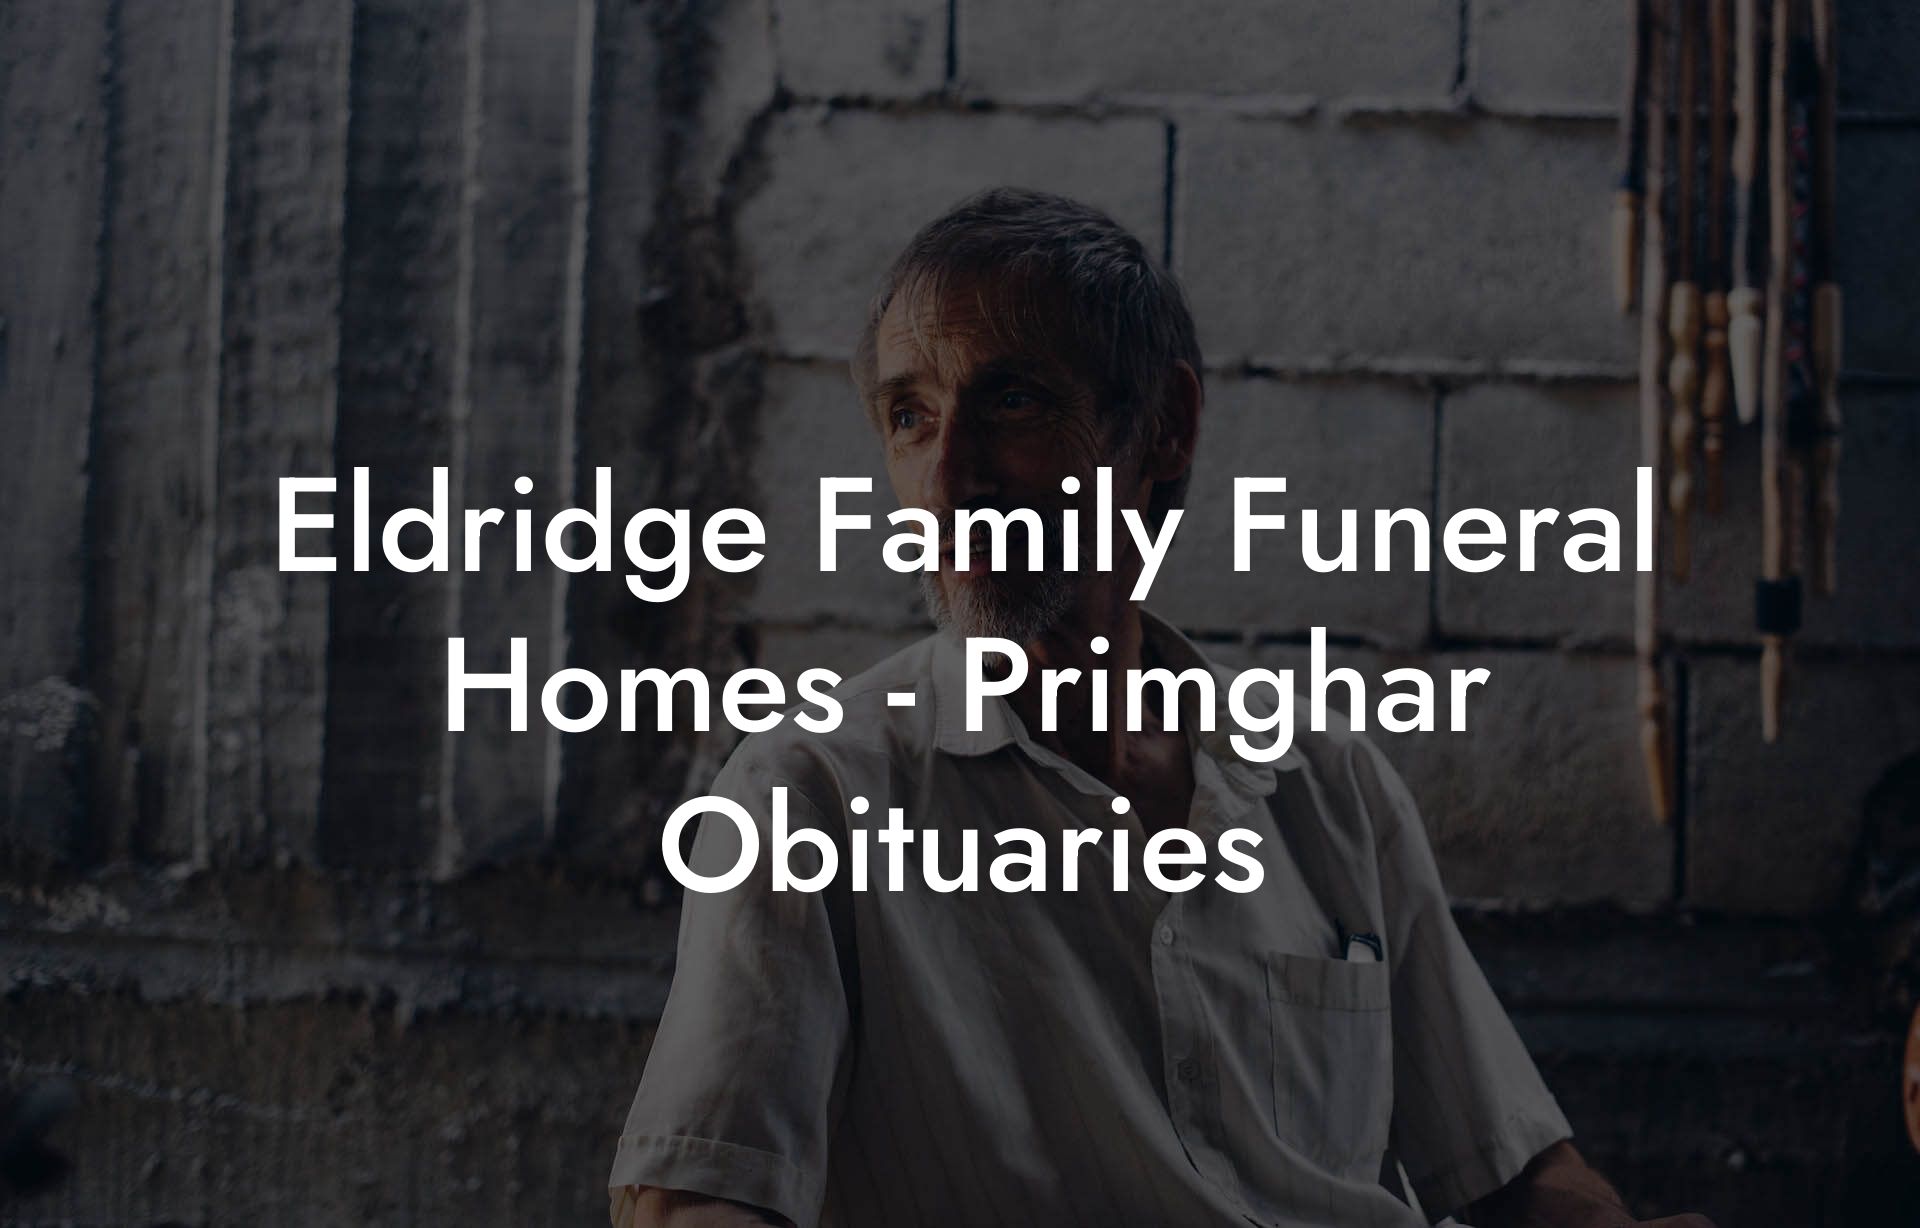 Eldridge Family Funeral Homes - Primghar Obituaries